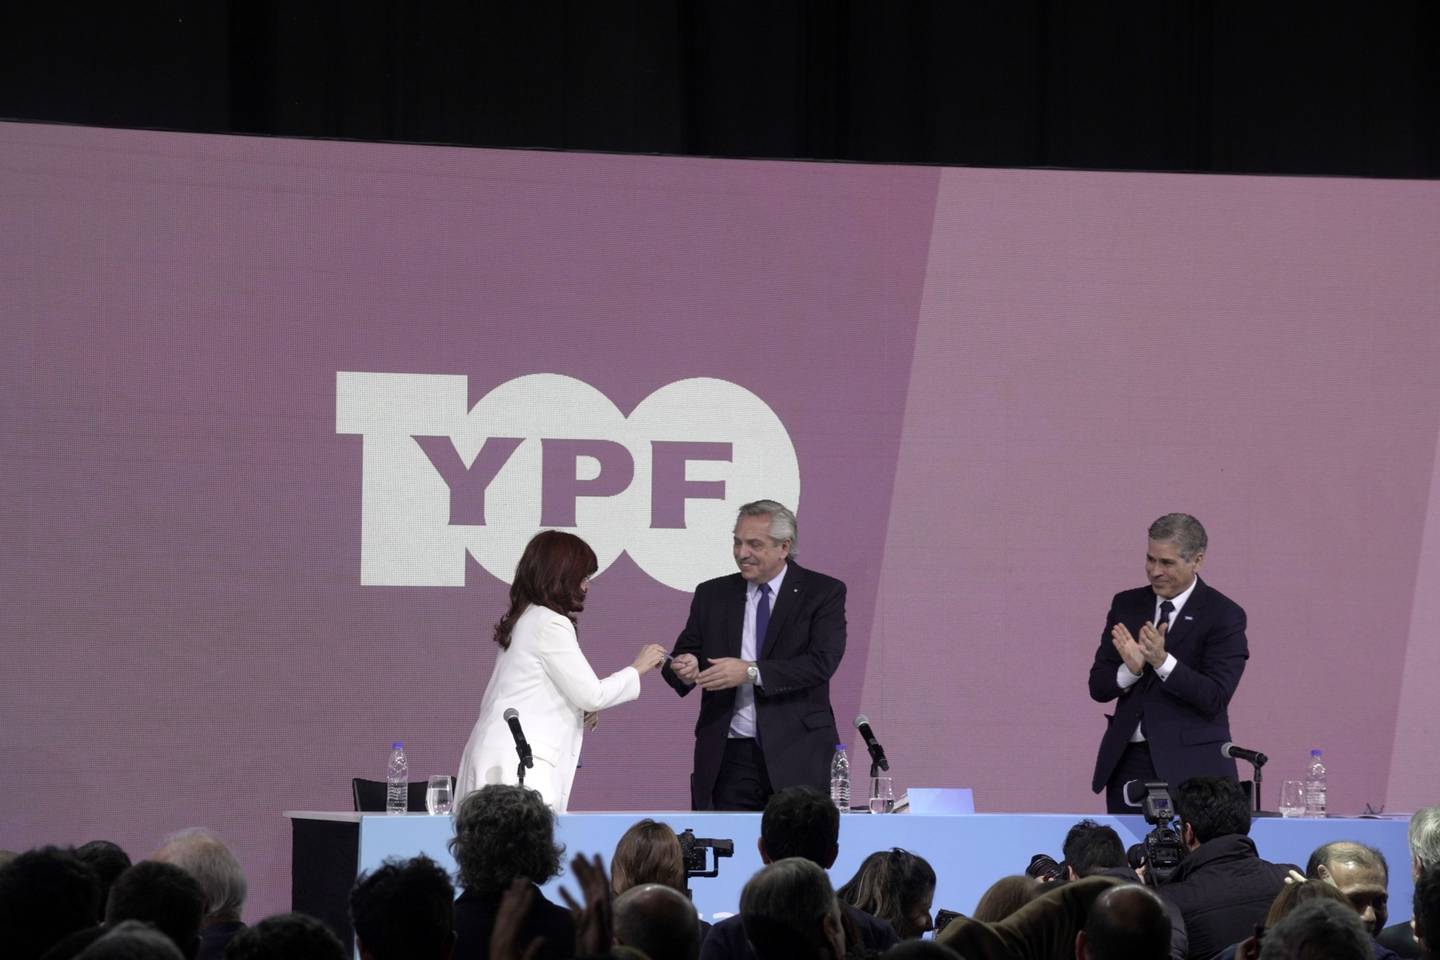 El presidente Alberto Fernandez recibe una lapicera de Cristina Fernandez de Kirchner, en el marco de los 100 años de YPF, el pasado 3 de junio  Photographer: Pablo Piovano/Bloombergdfd